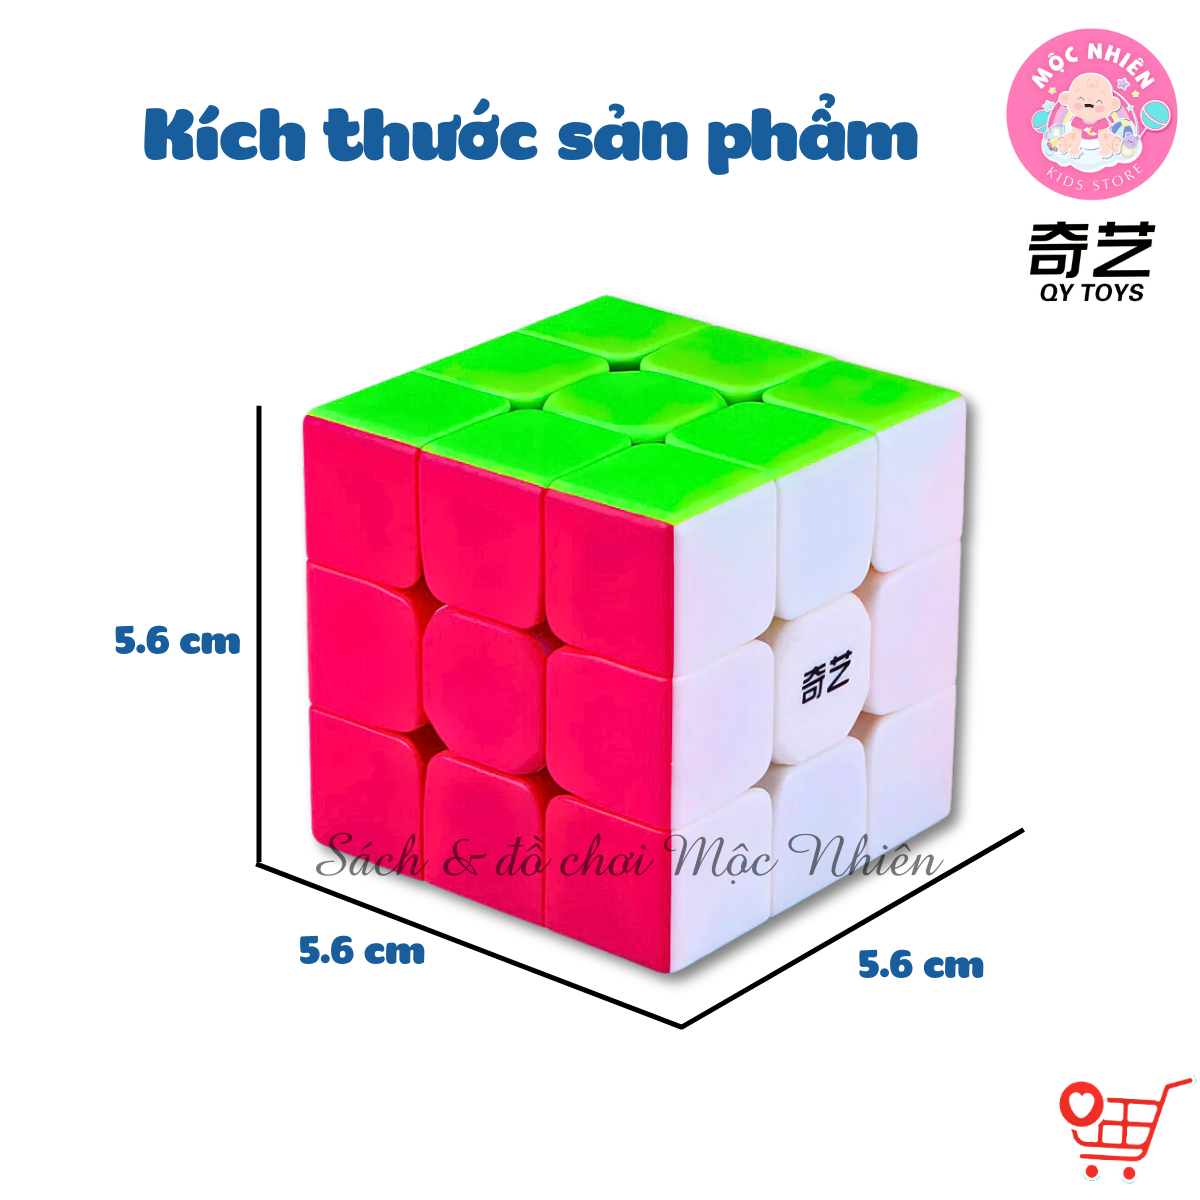 Đồ chơi trí tuệ Rubik Qiyi QY TOYS – Stickerless 2x2 3x3 4x4 5x5 Pyraminx Skewb Megaminx Square-1 Windmill Dino Axis